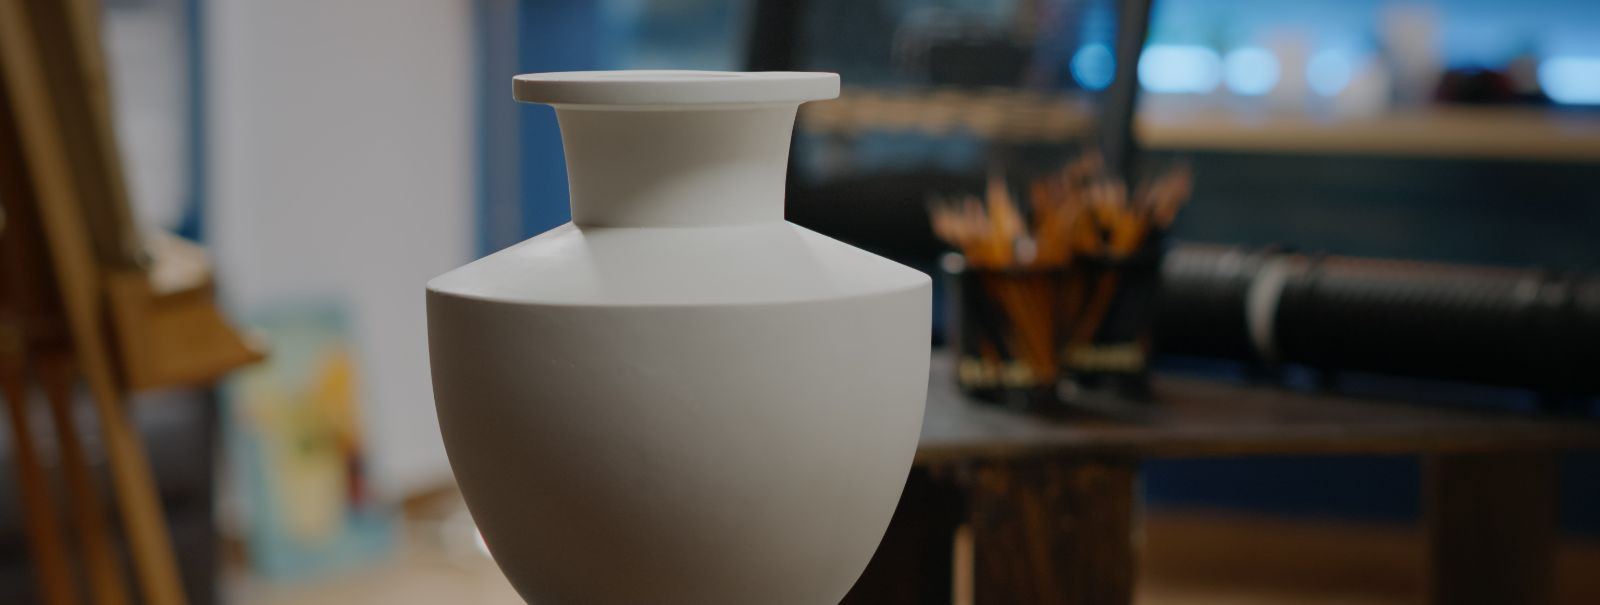 Shishi keraamika on peen keraamika vorm, mis on tuntud oma suurepärase meisterlikkuse ja ajatu ilu poolest. Need esemed tihti sisaldavad keerukaid mustreid ja v